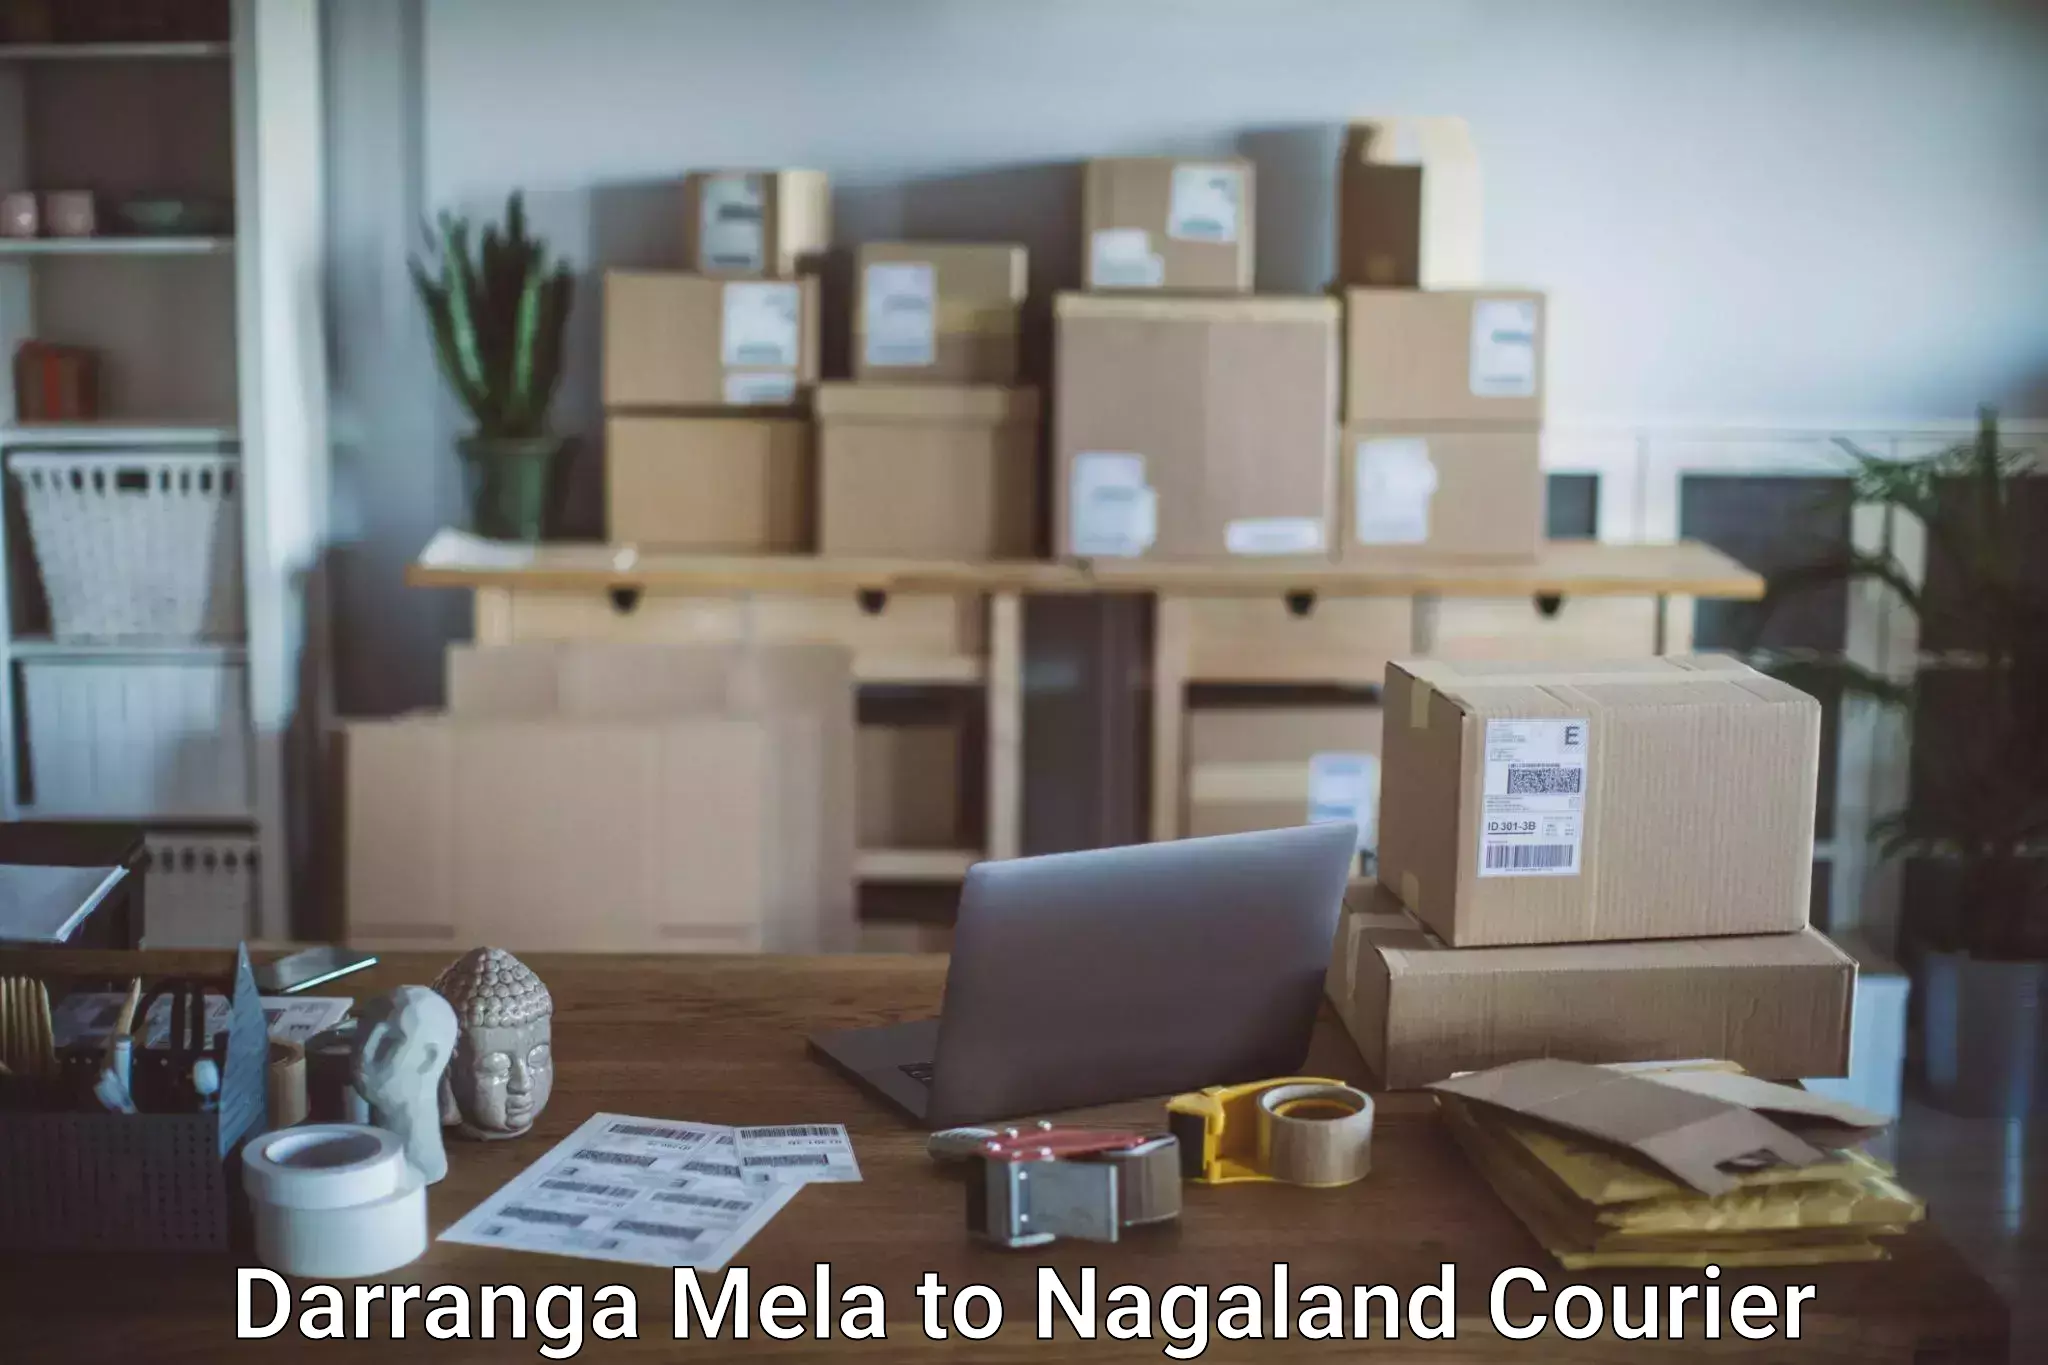 Automated luggage transport Darranga Mela to Nagaland